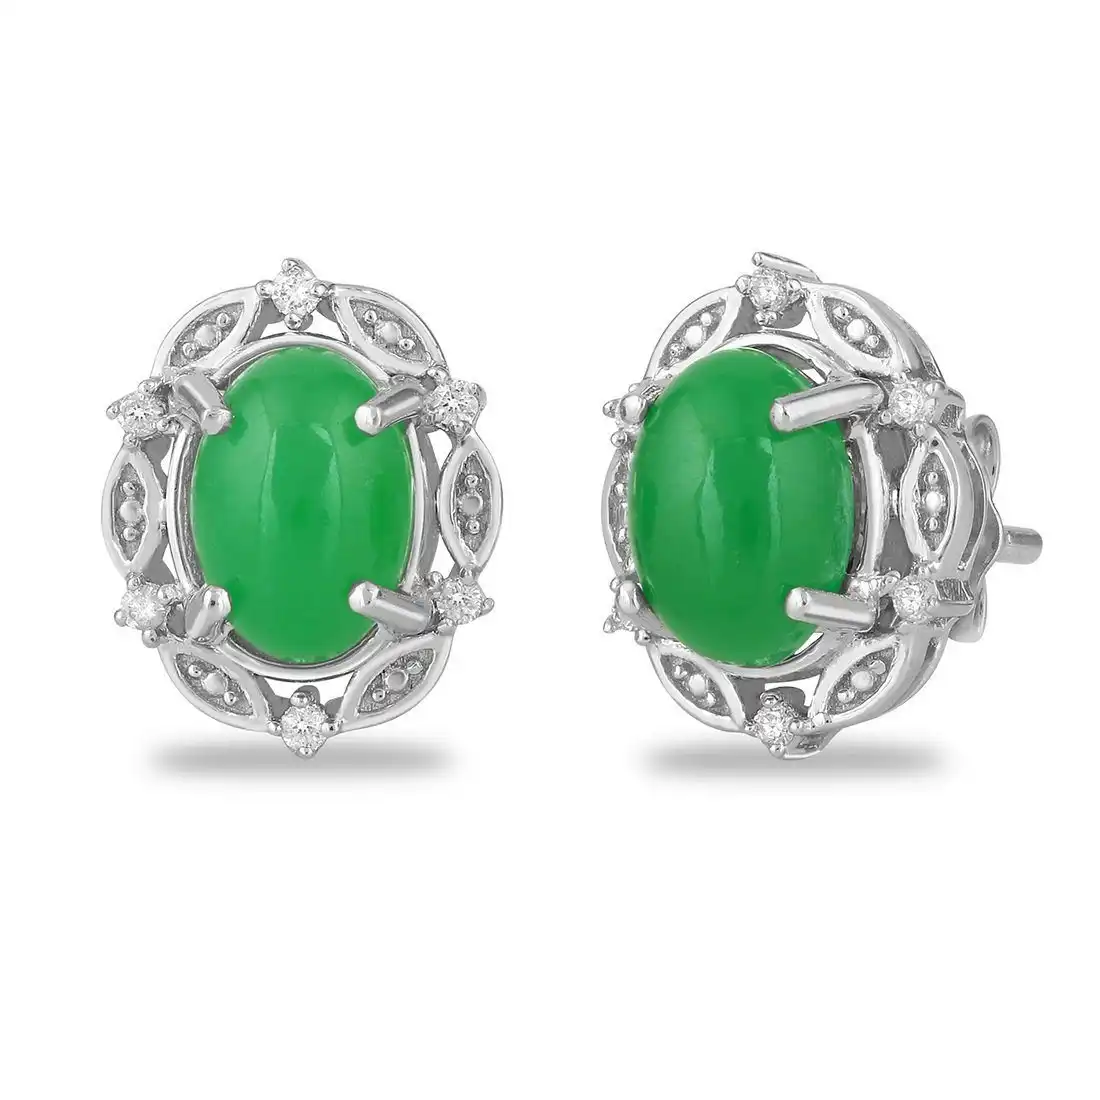 Diamond Set Oval Jade Stud Earrings in Sterling Silver